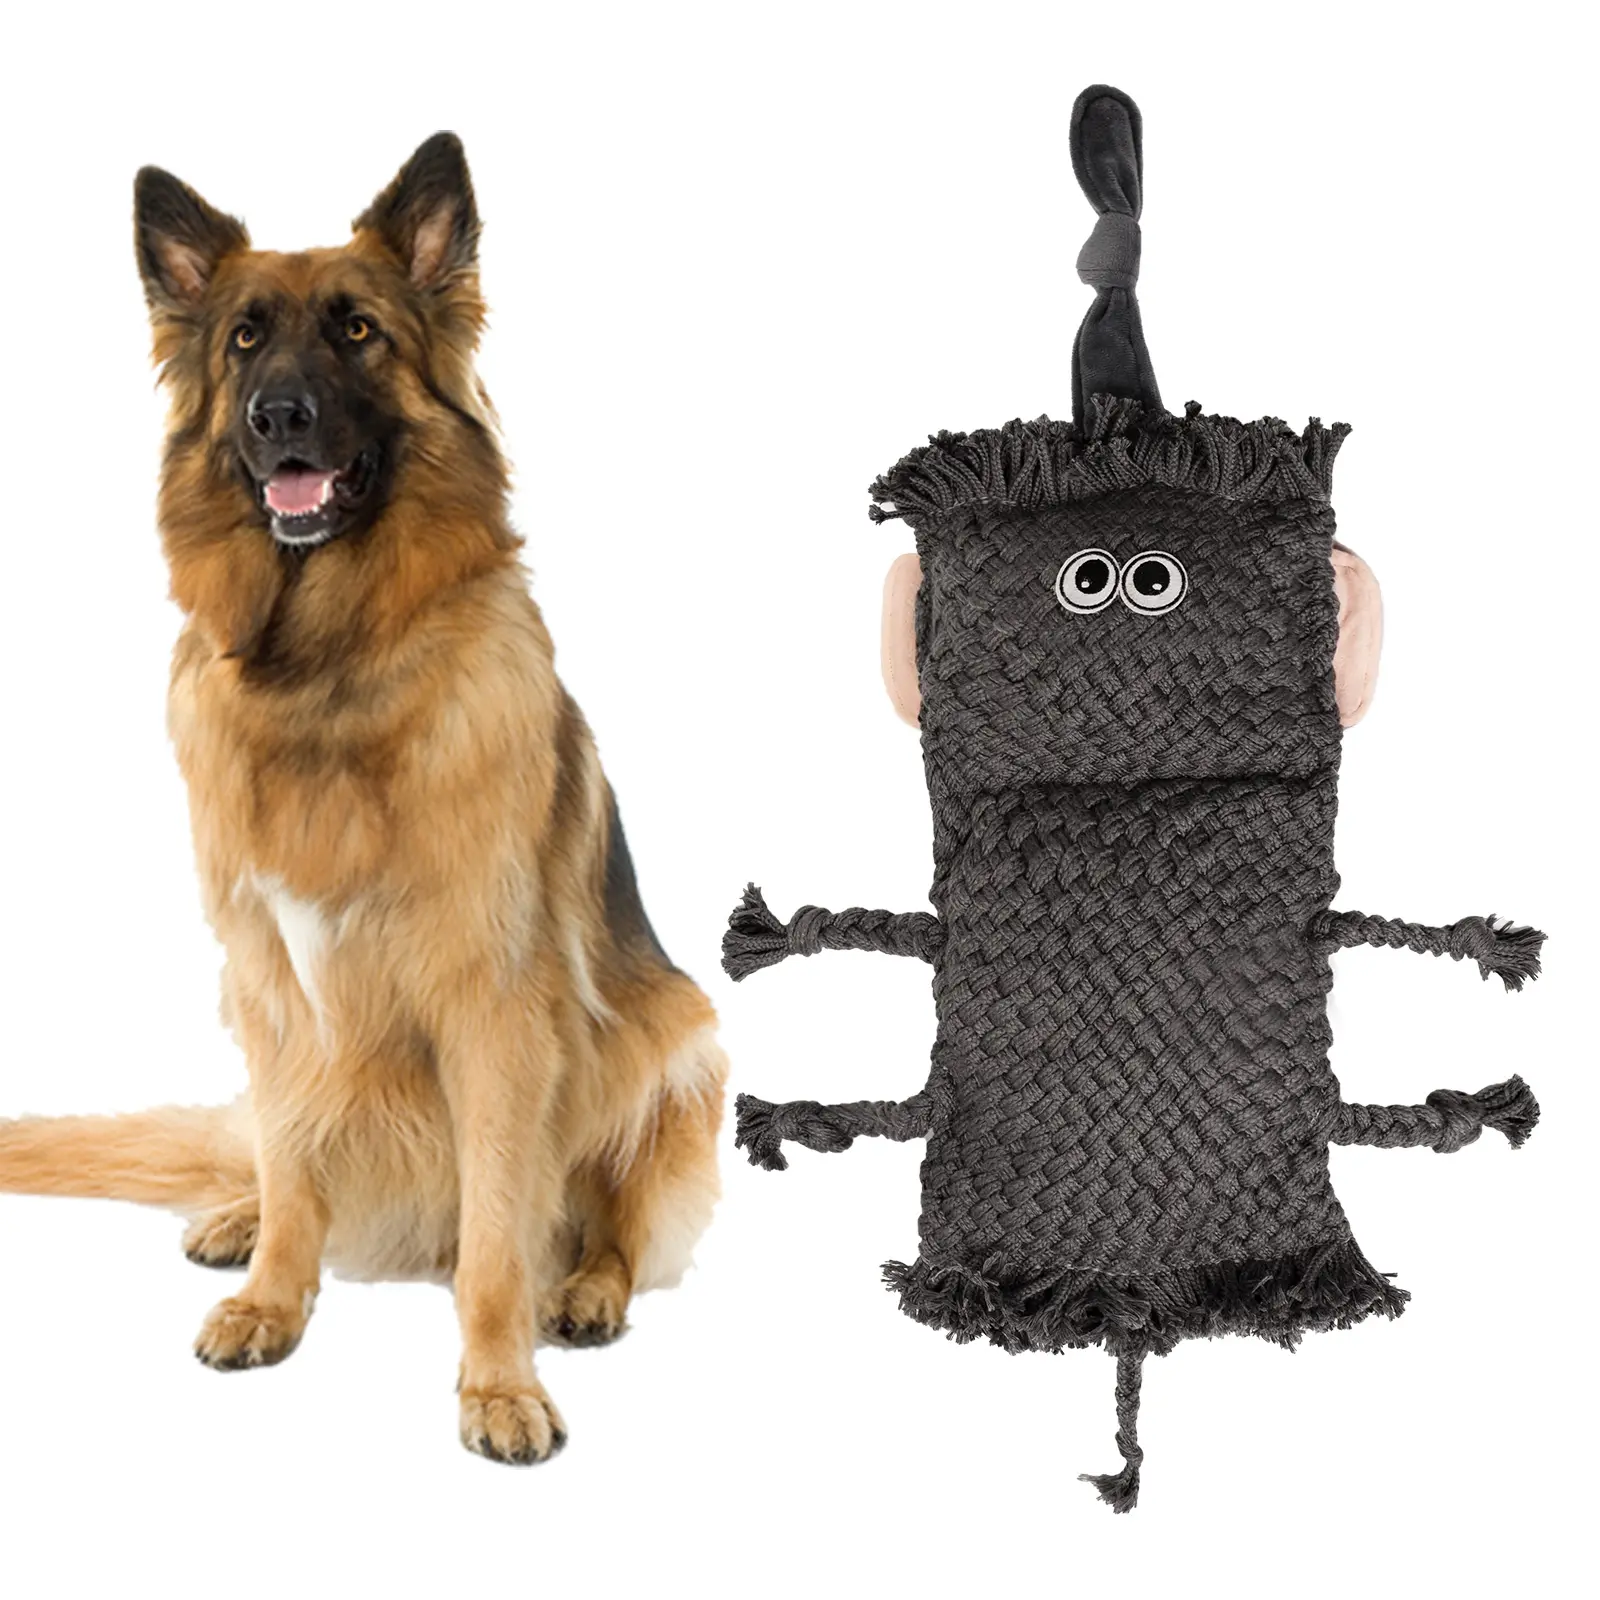 Nuovo Design di grandi dimensioni cane da masticare peluche giocattolo per la pulizia dei denti resistenza al morso Squeaker all'interno di carta sonora giocattoli per animali domestici